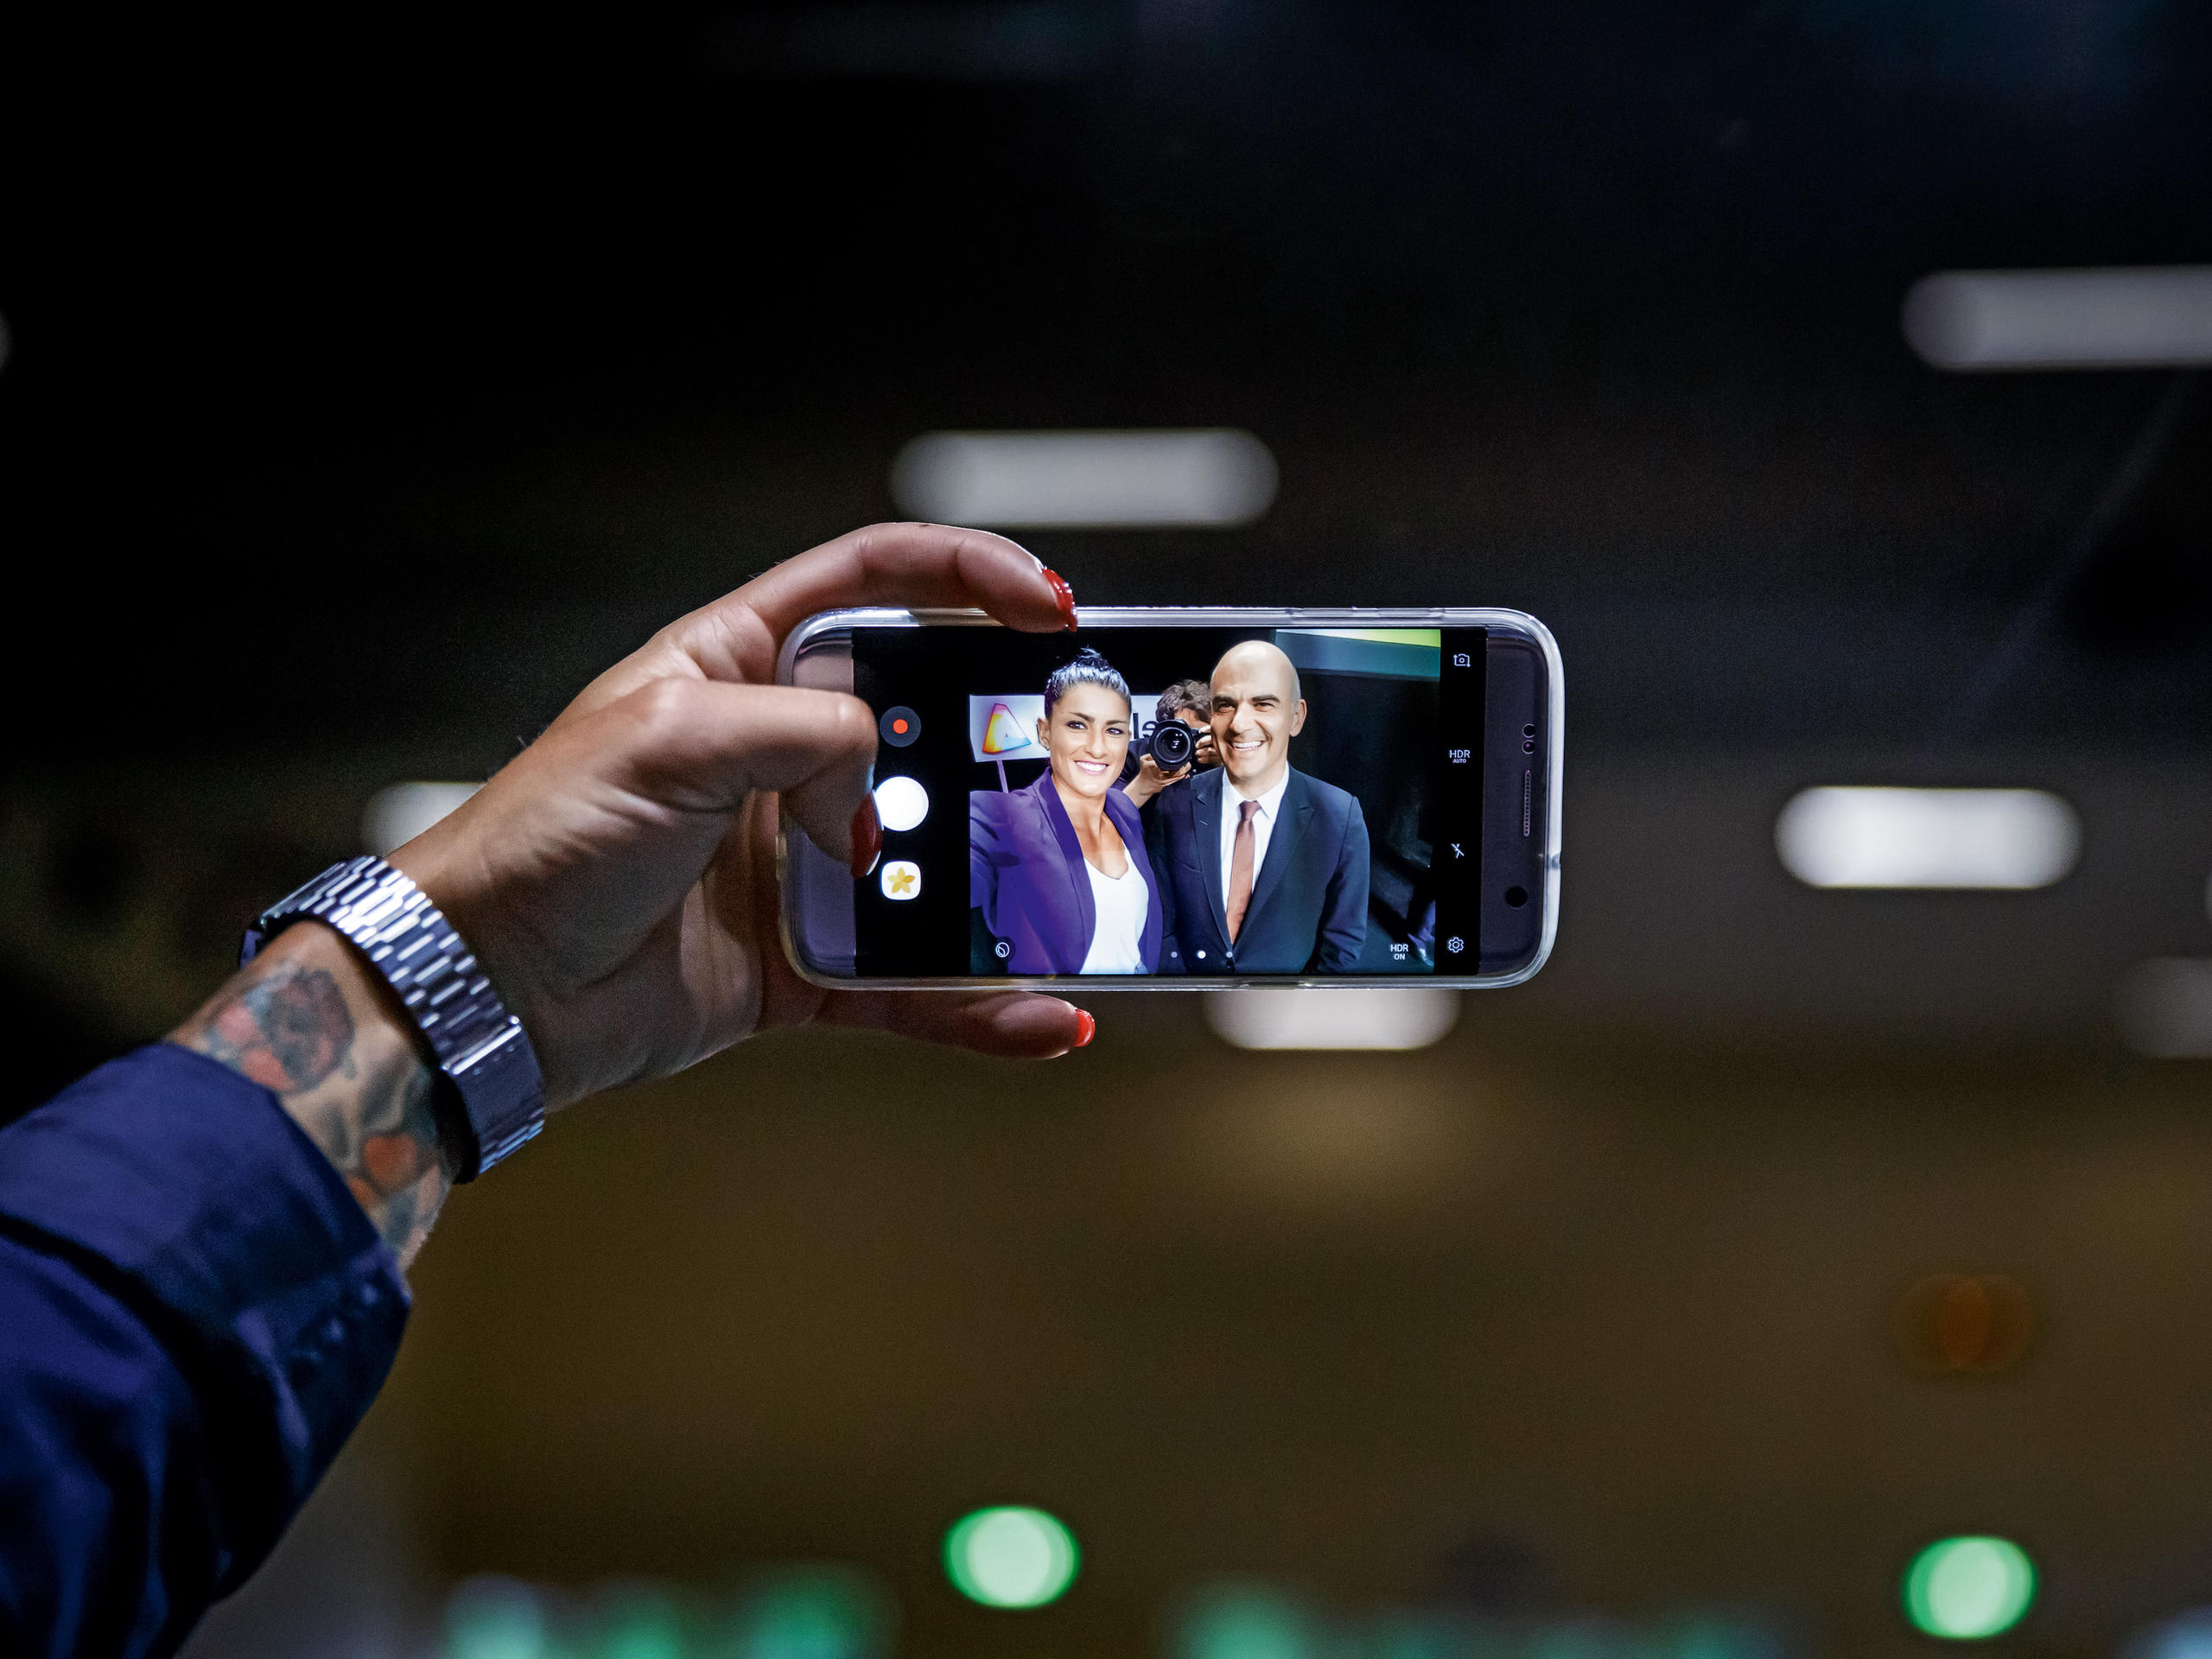 携帯電話でセルフィーを撮影する女性と男性が写る携帯画面